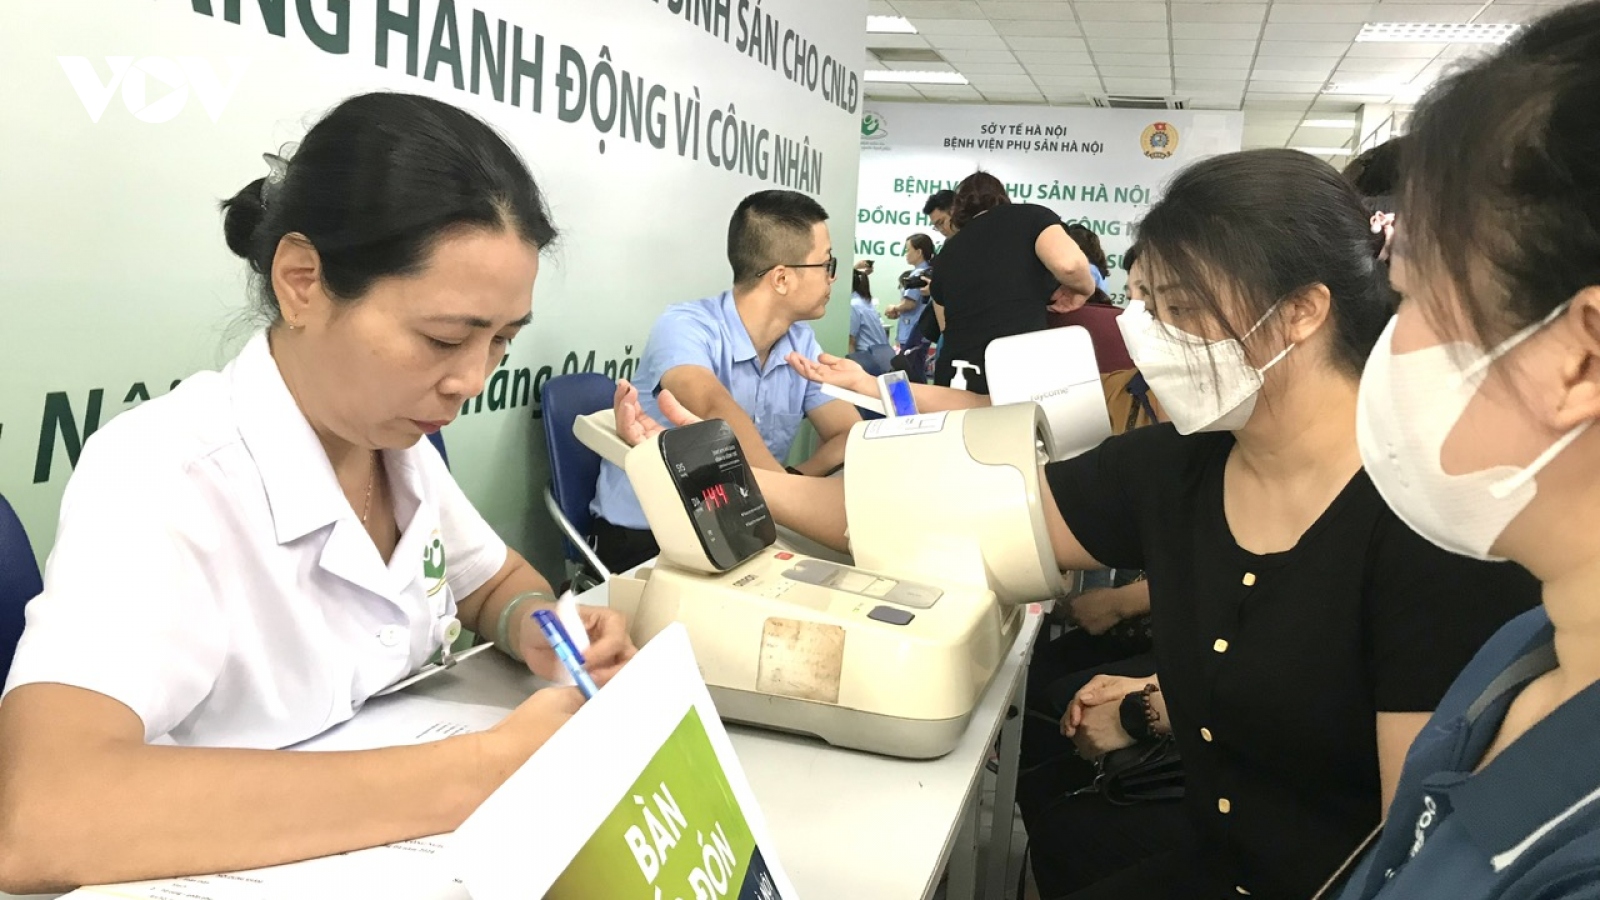 Khám sức khỏe, tầm soát ung thư miễn phí cho 600 nữ công nhân ở Hà Nội